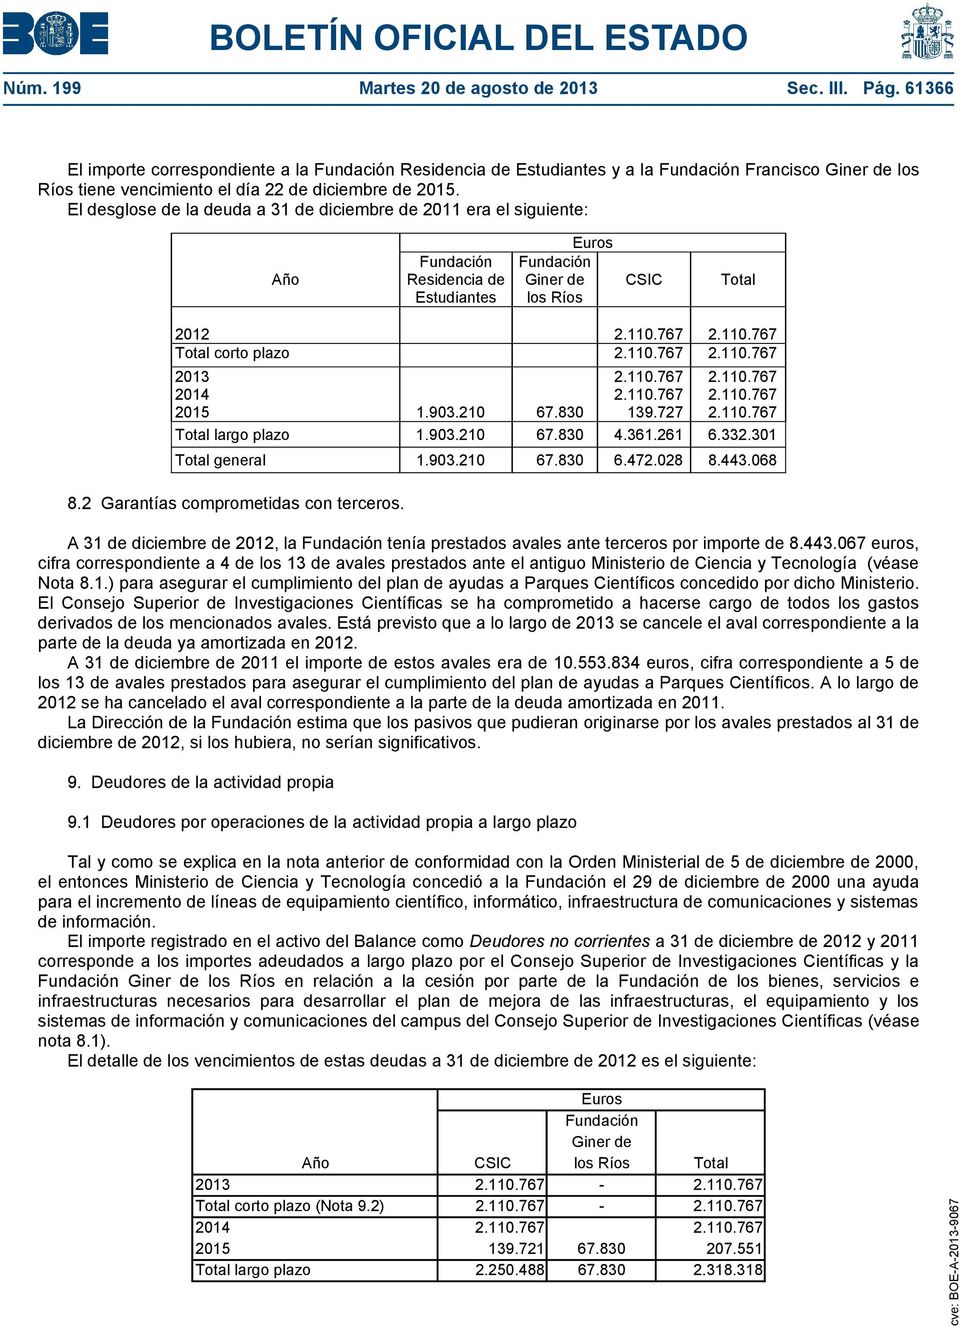 El desglose de la deuda a 31 de diciembre de 2011 era el siguiente: Año Fundación Residencia de Estudiantes Fundación Giner de los Ríos CSIC Total 2012 2.110.767 2.110.767 Total corto plazo 2.110.767 2.110.767 2013 2.